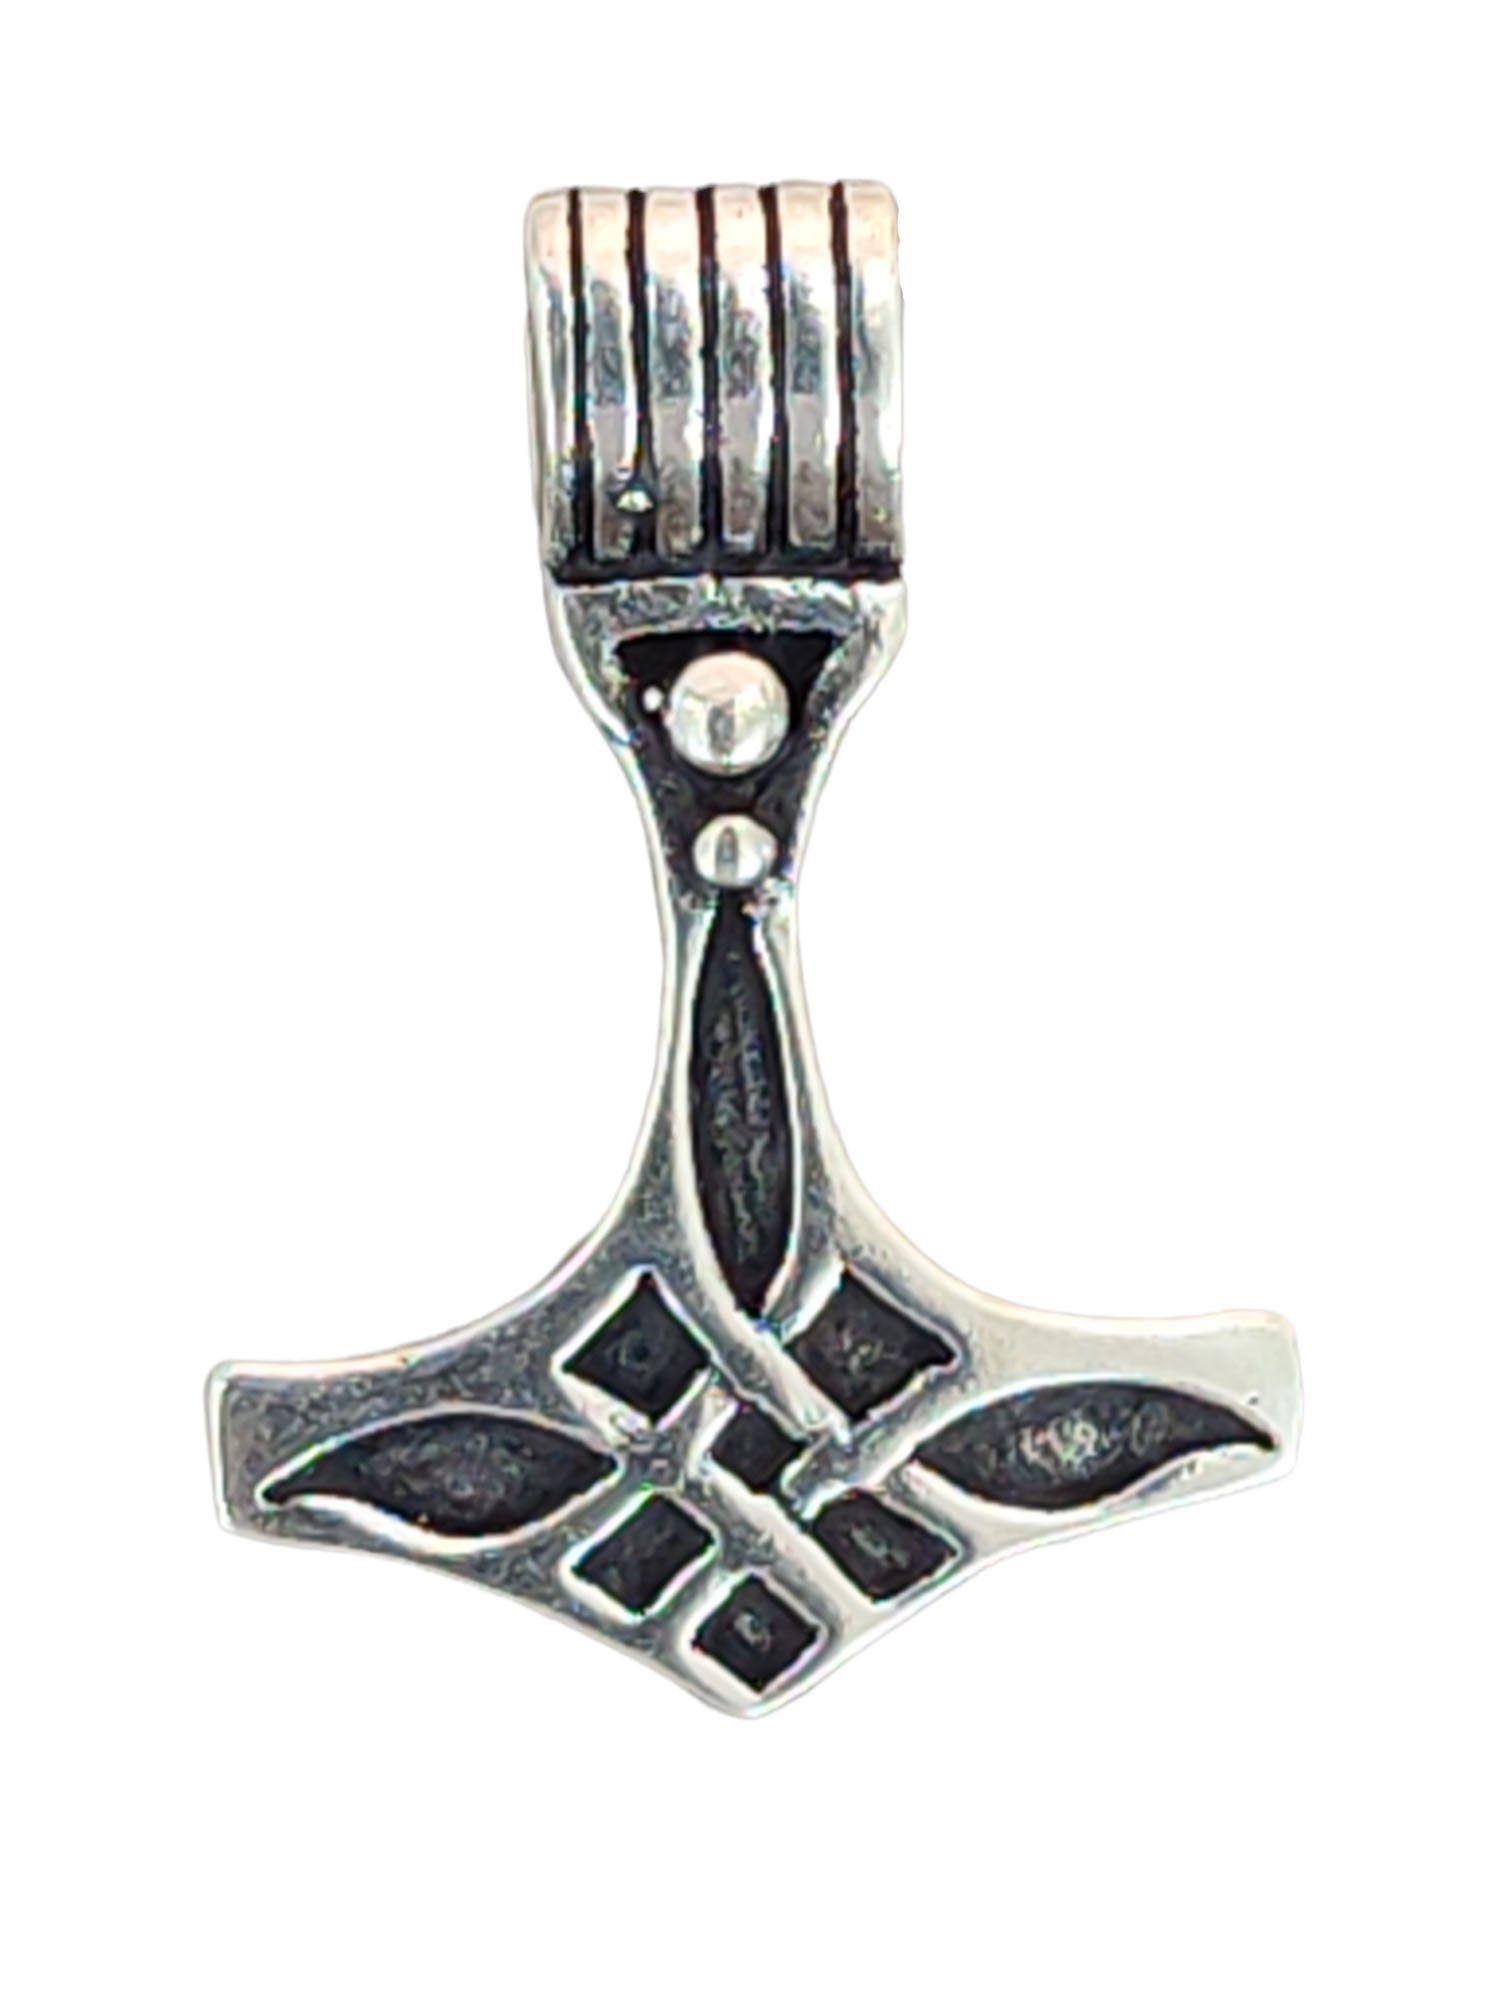 Silber Mjölnir Kiss Thor Kettenanhänger Hammer Anhänger Thors 925 Leather of Thorshammer